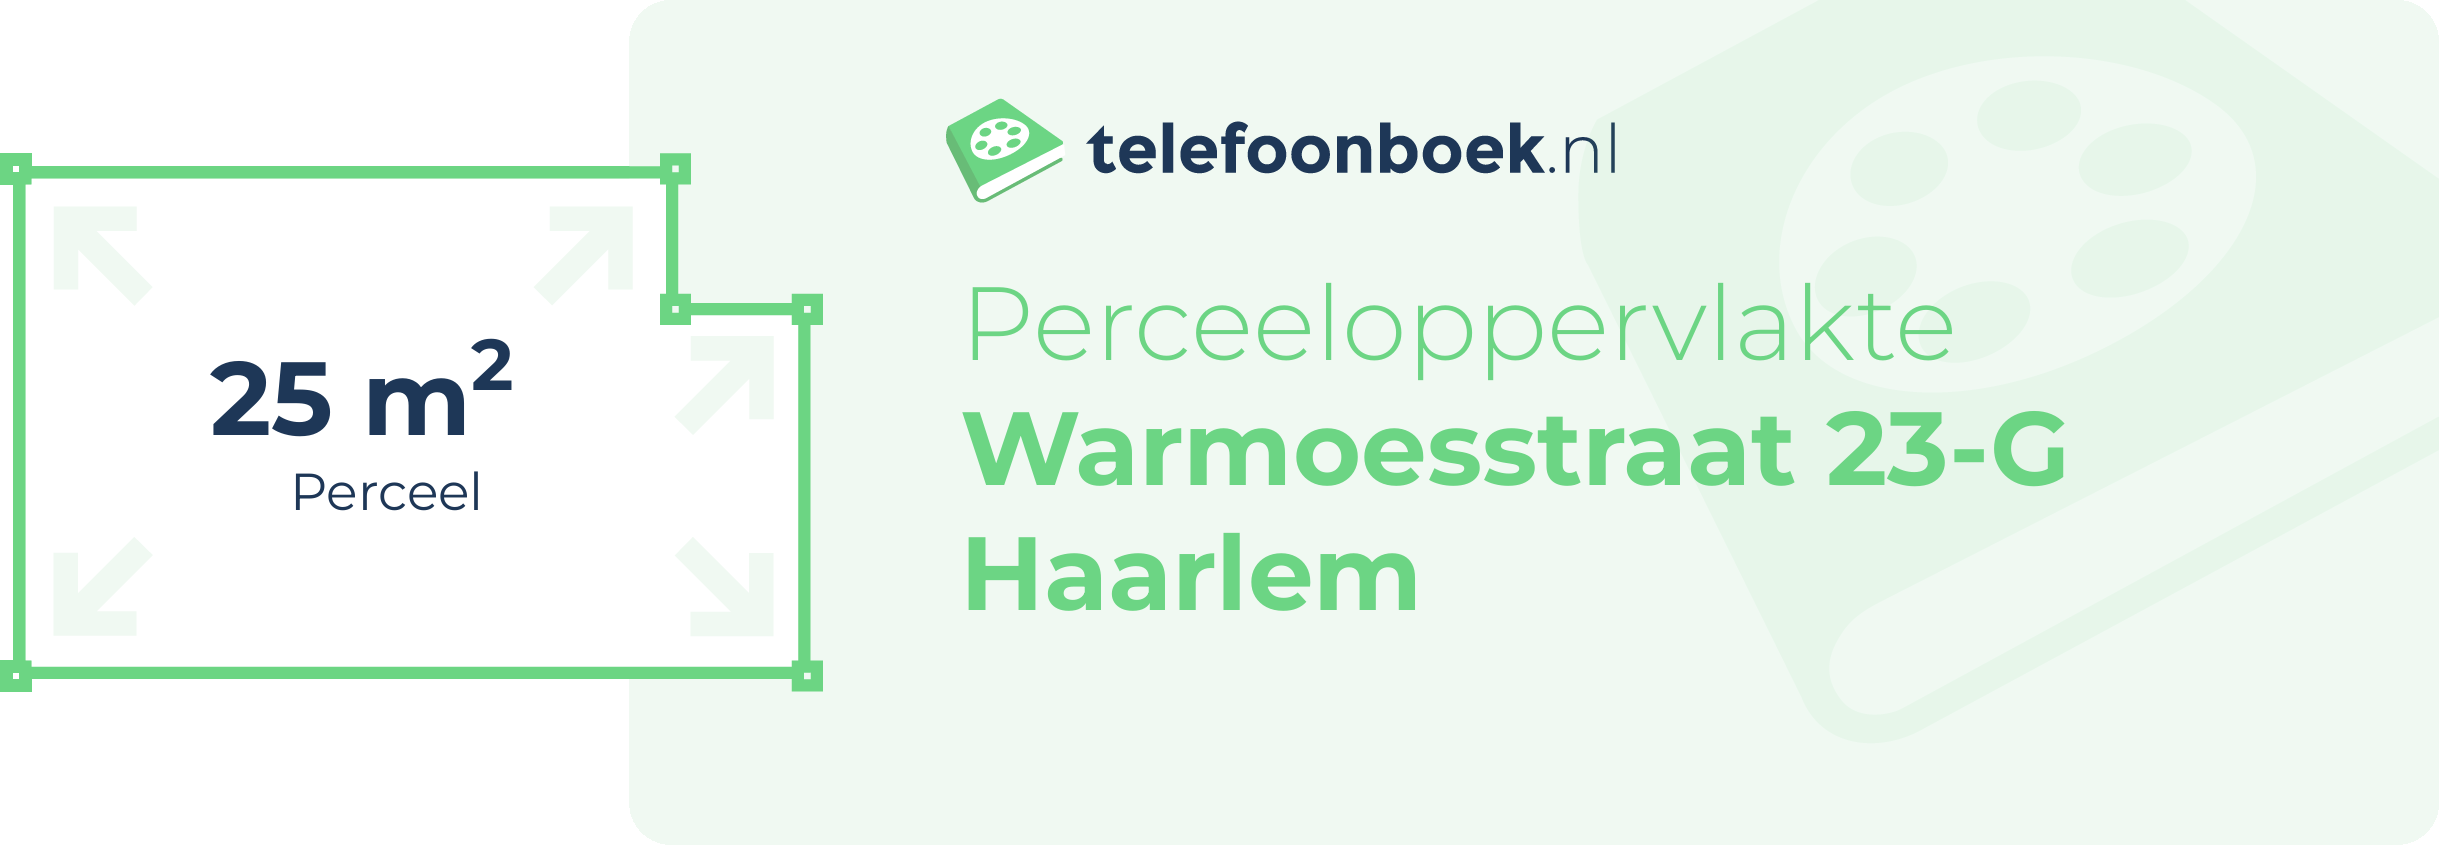 Perceeloppervlakte Warmoesstraat 23-G Haarlem